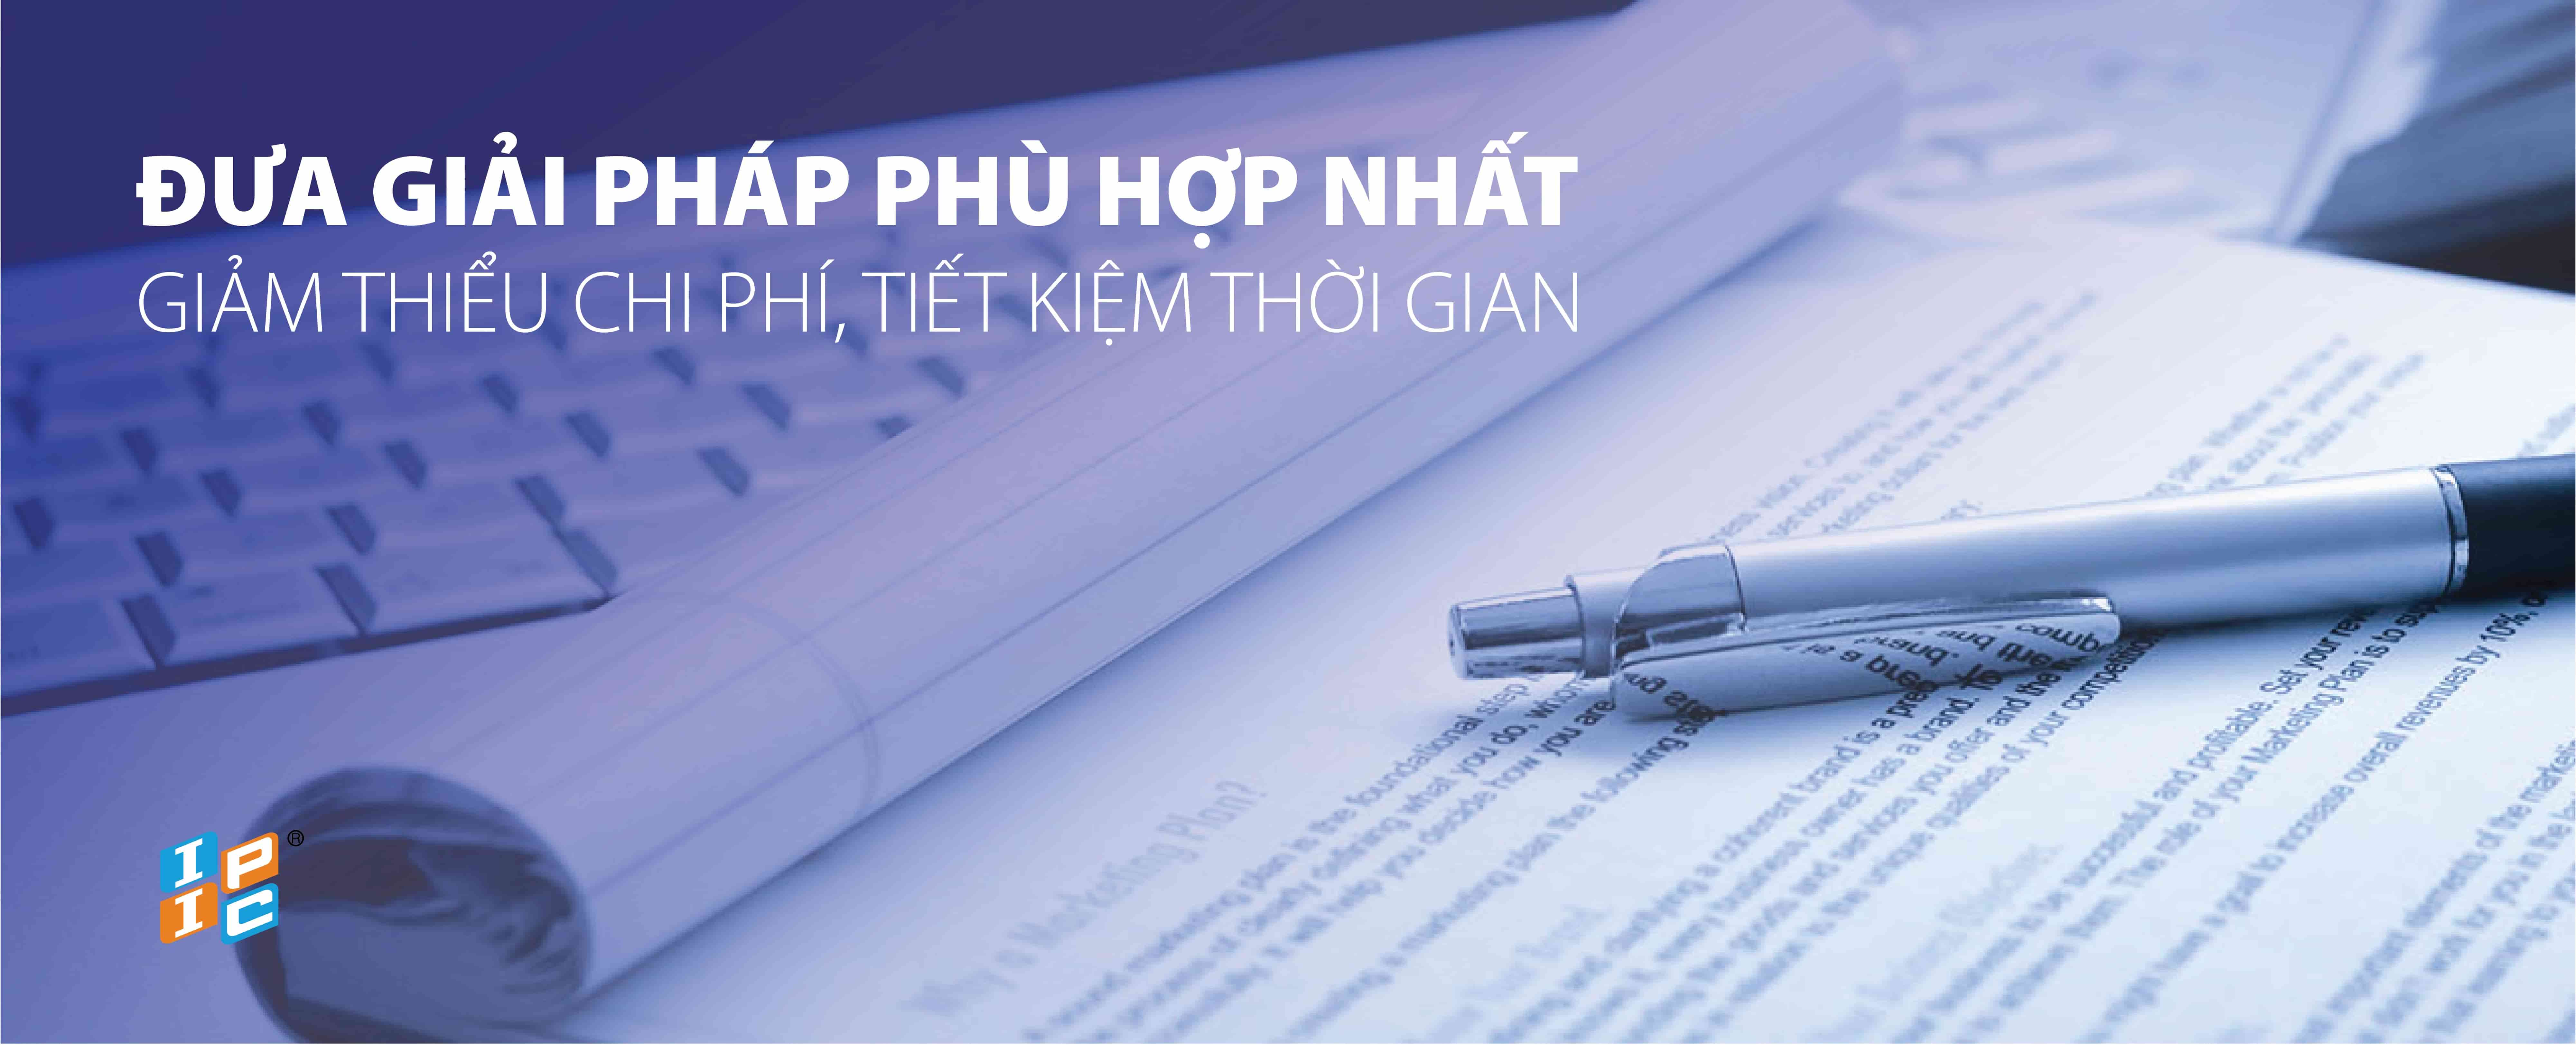 Bảy vấn đề pháp lý liên quan cam kết mở cửa thị trường của Việt Nam về dịch vụ mua bán hàng hóa và dịch vụ liên quan (phân phối) theo cam kết WTO và quy định của Pháp luật Việt Nam